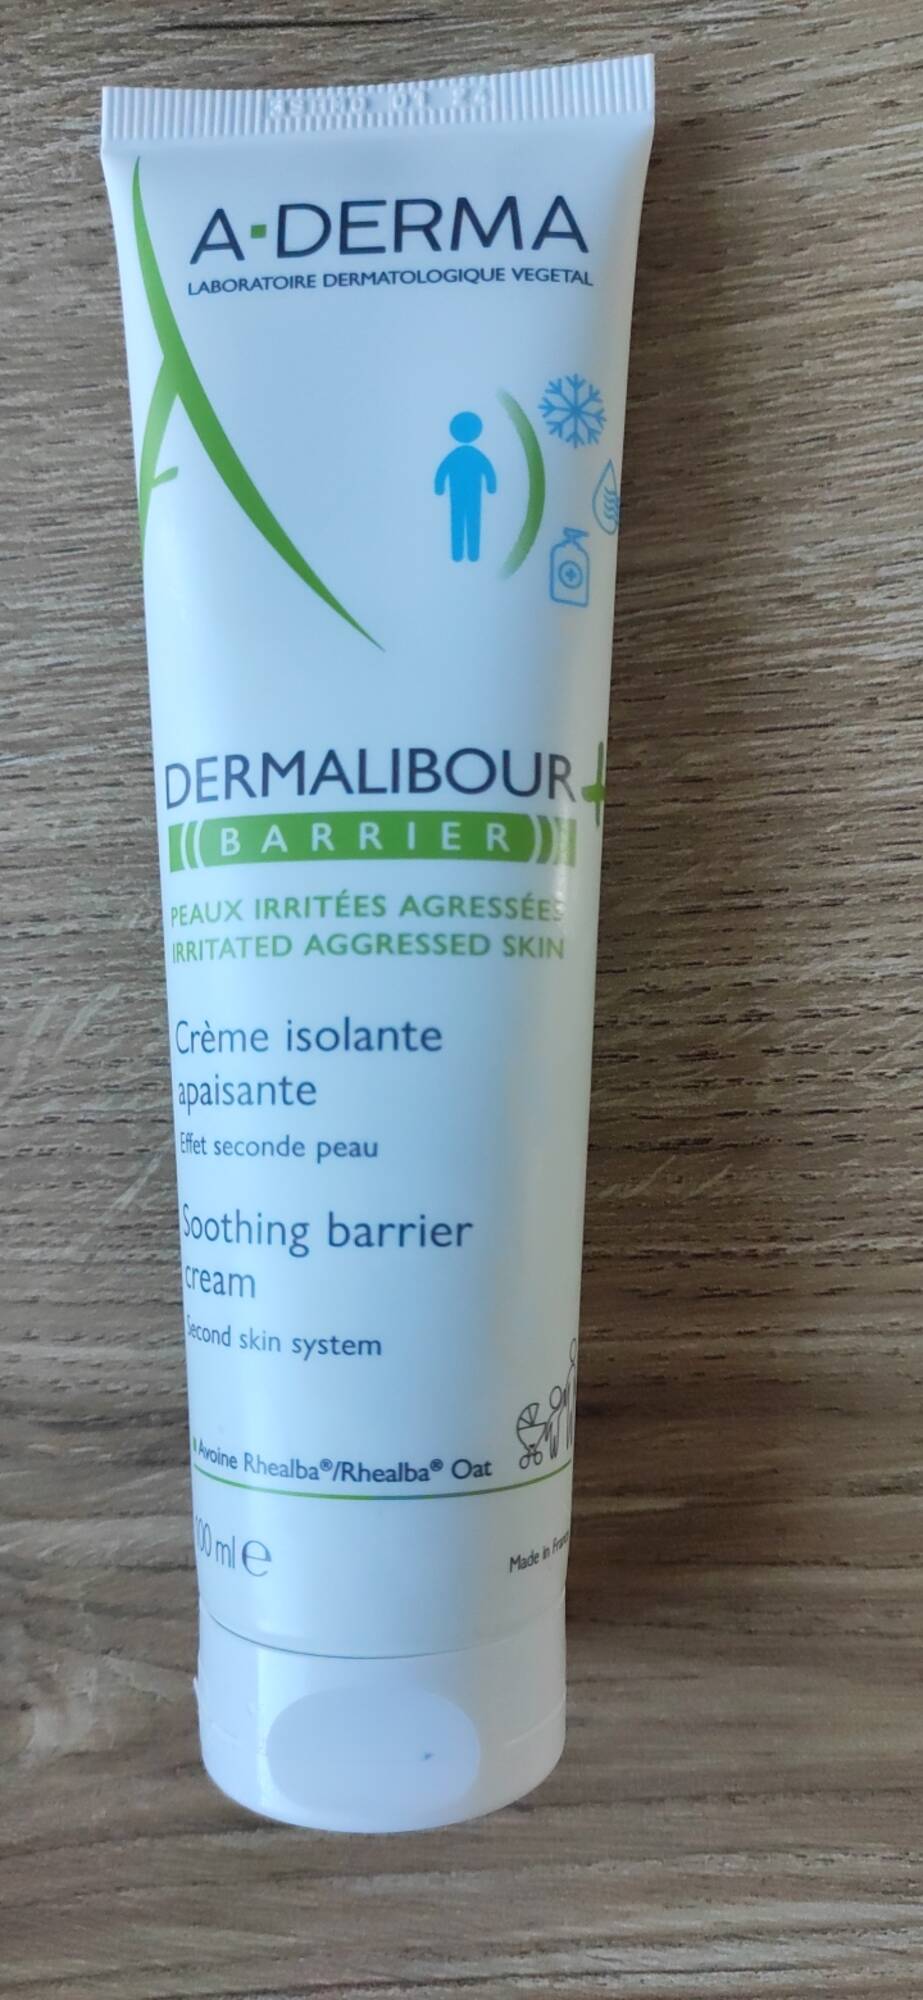 A-DERMA - Dermalibour + Barrier- Crème isolante apaisante